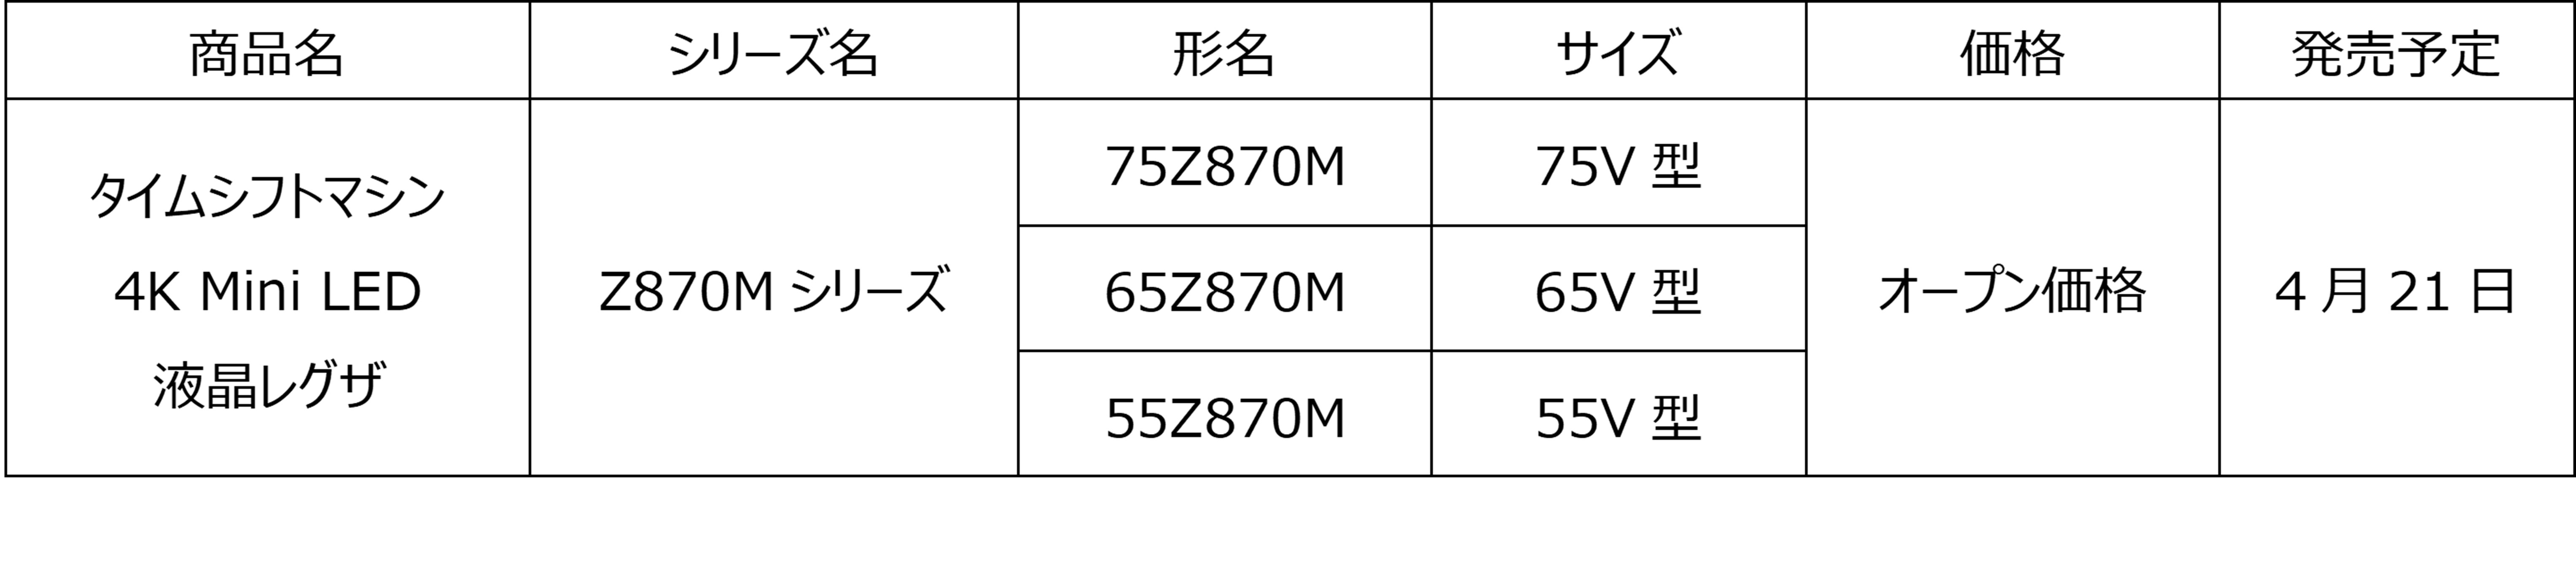 タイムシフトマシン4K Mini LED液晶レグザ「Z870Mシリーズ」発売 